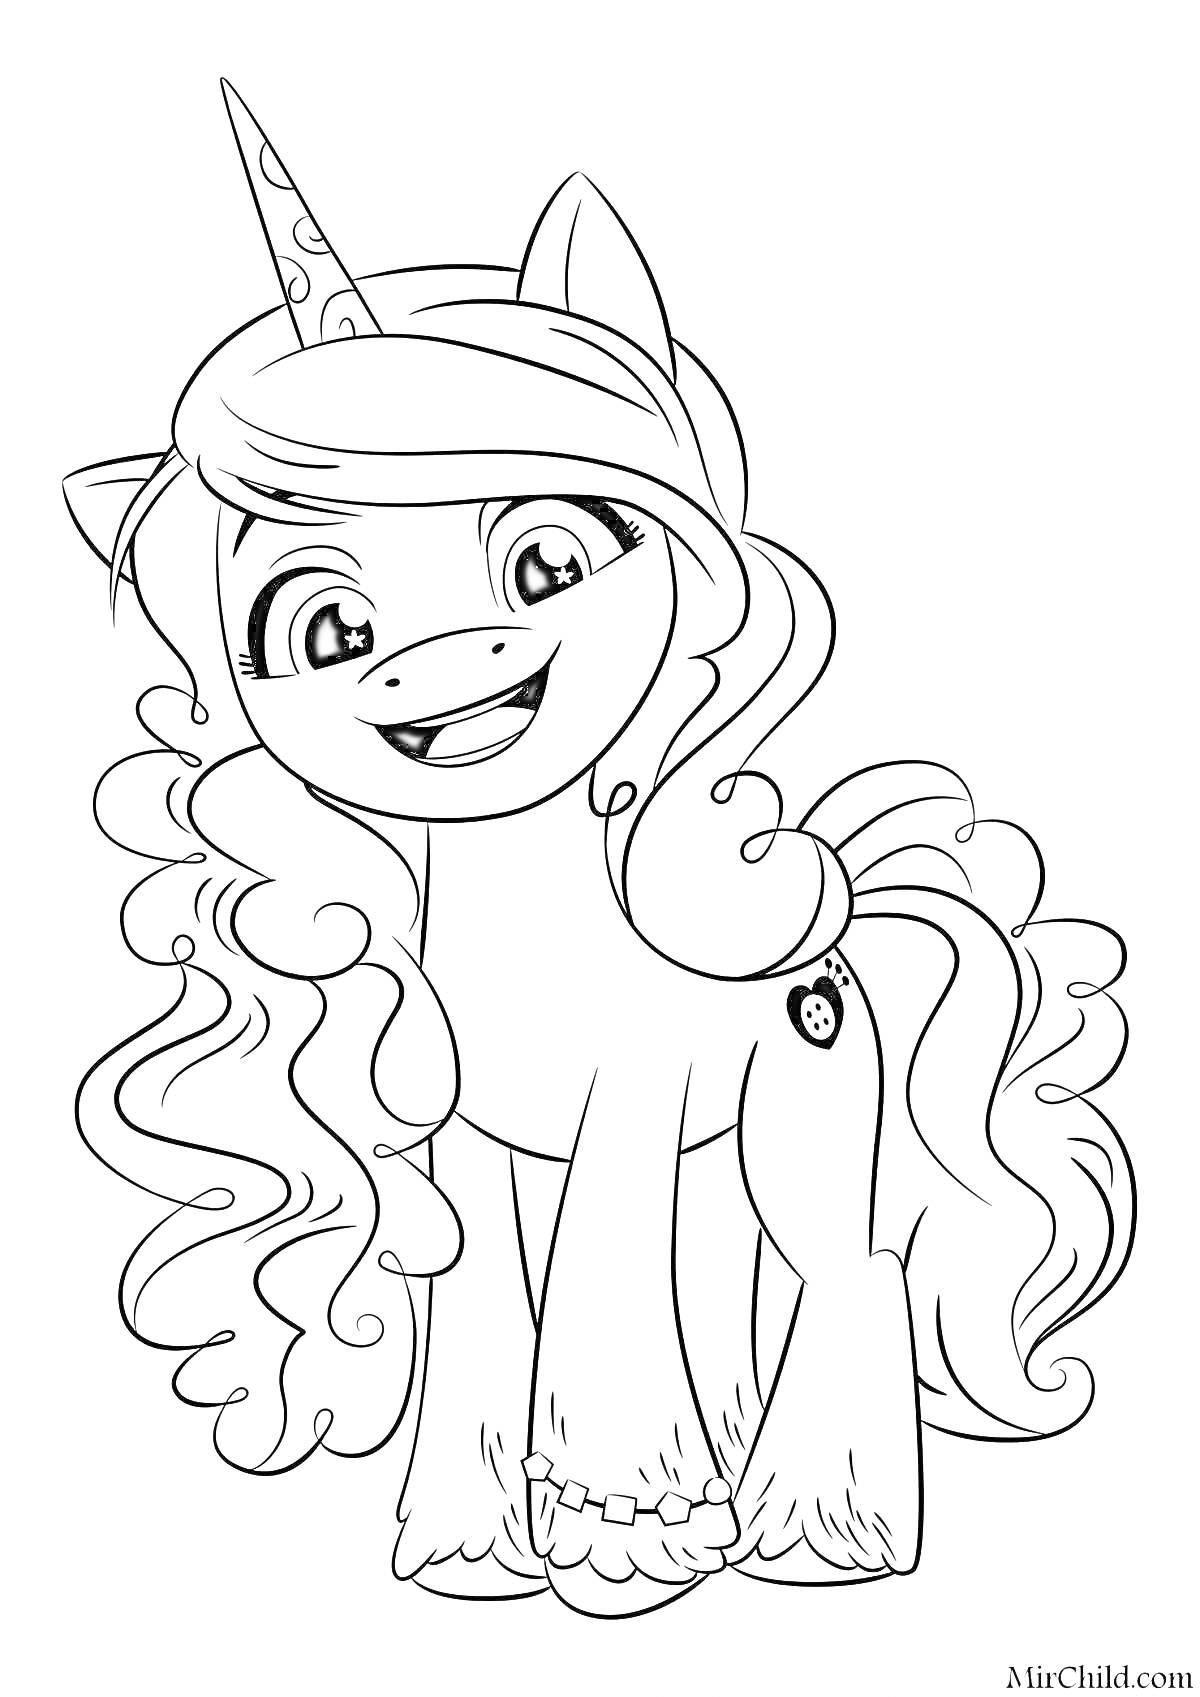 Пони с длинными кудрявыми волосами и единорогом, улыбается, изображение с кьютимаркой в виде пуговицы